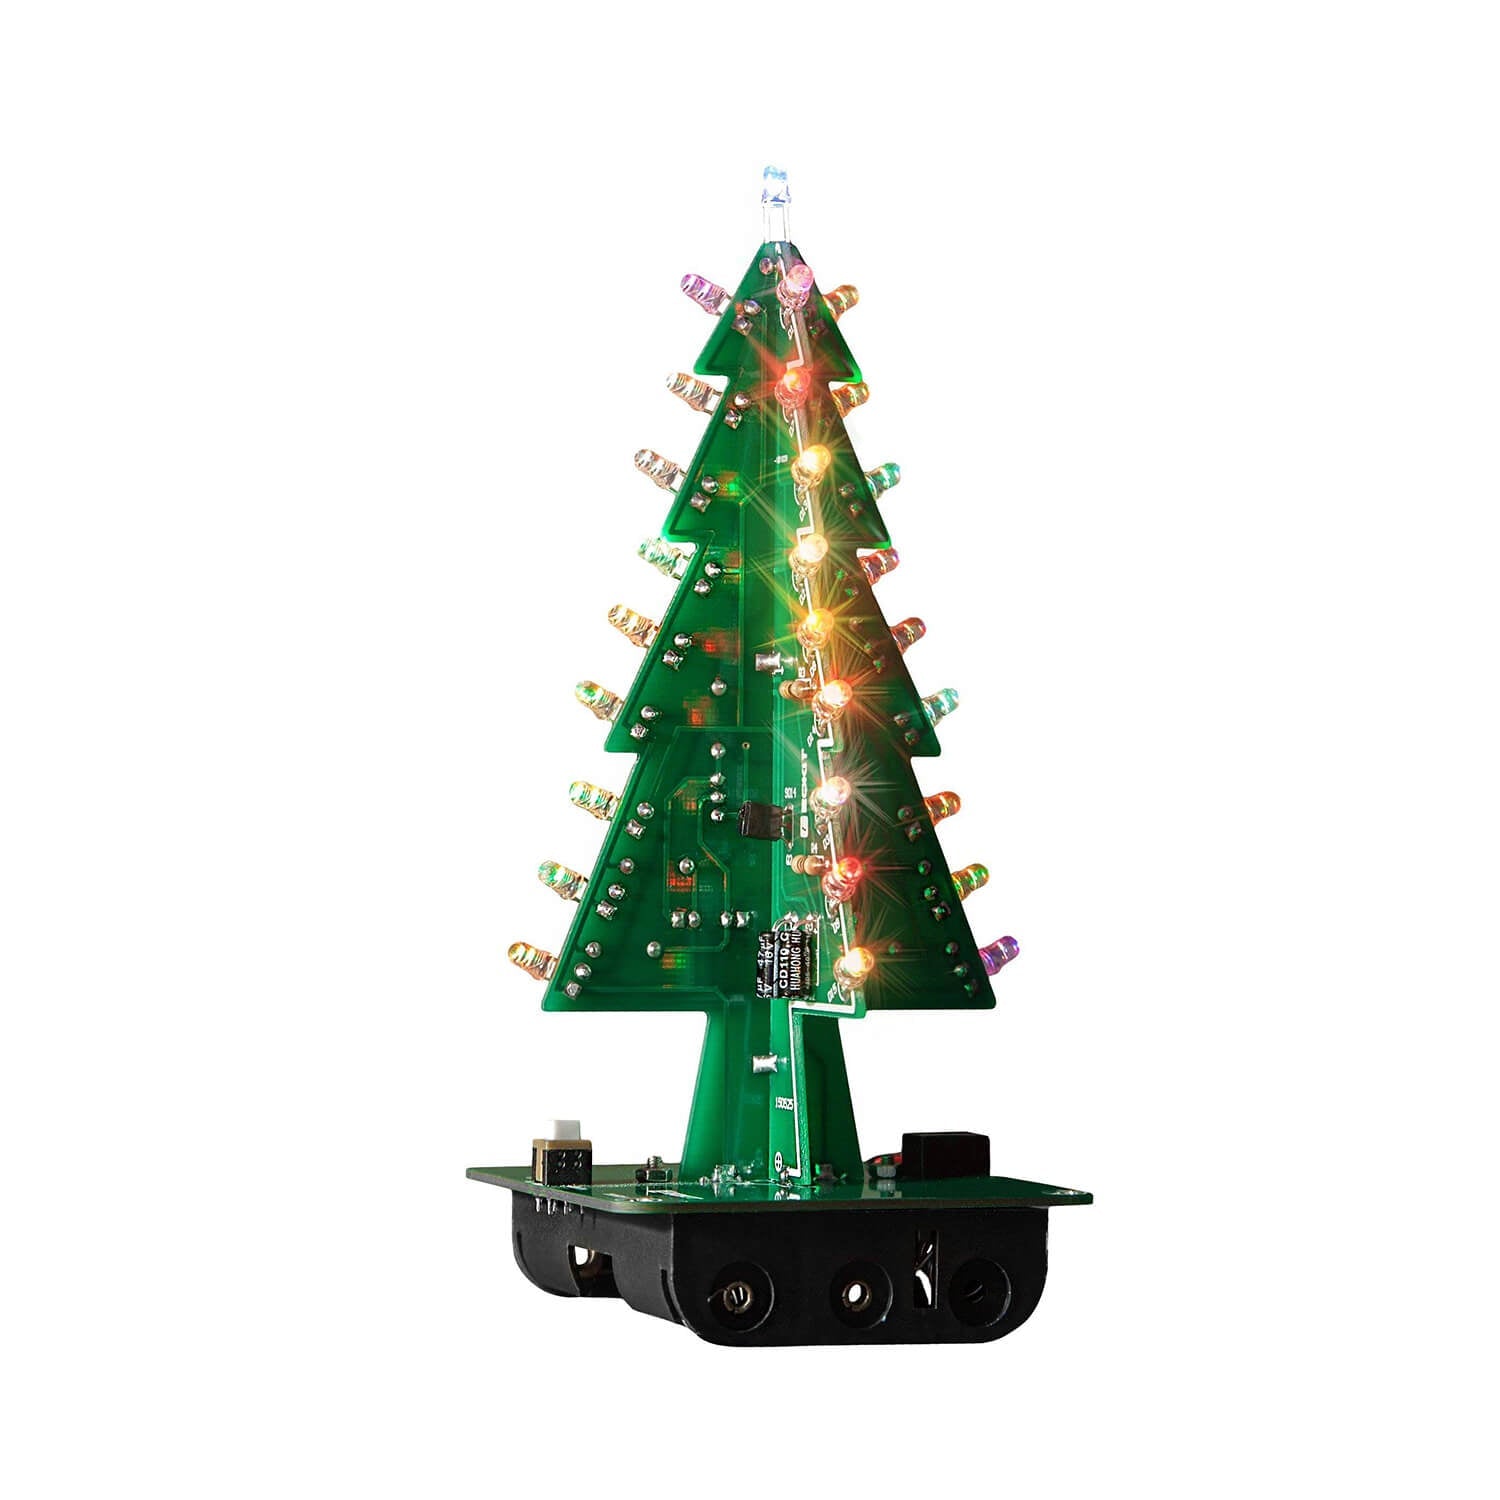 DIY LED Weihnachtsbaum Kit zum Löten mit bunt blinkenden Lichtern